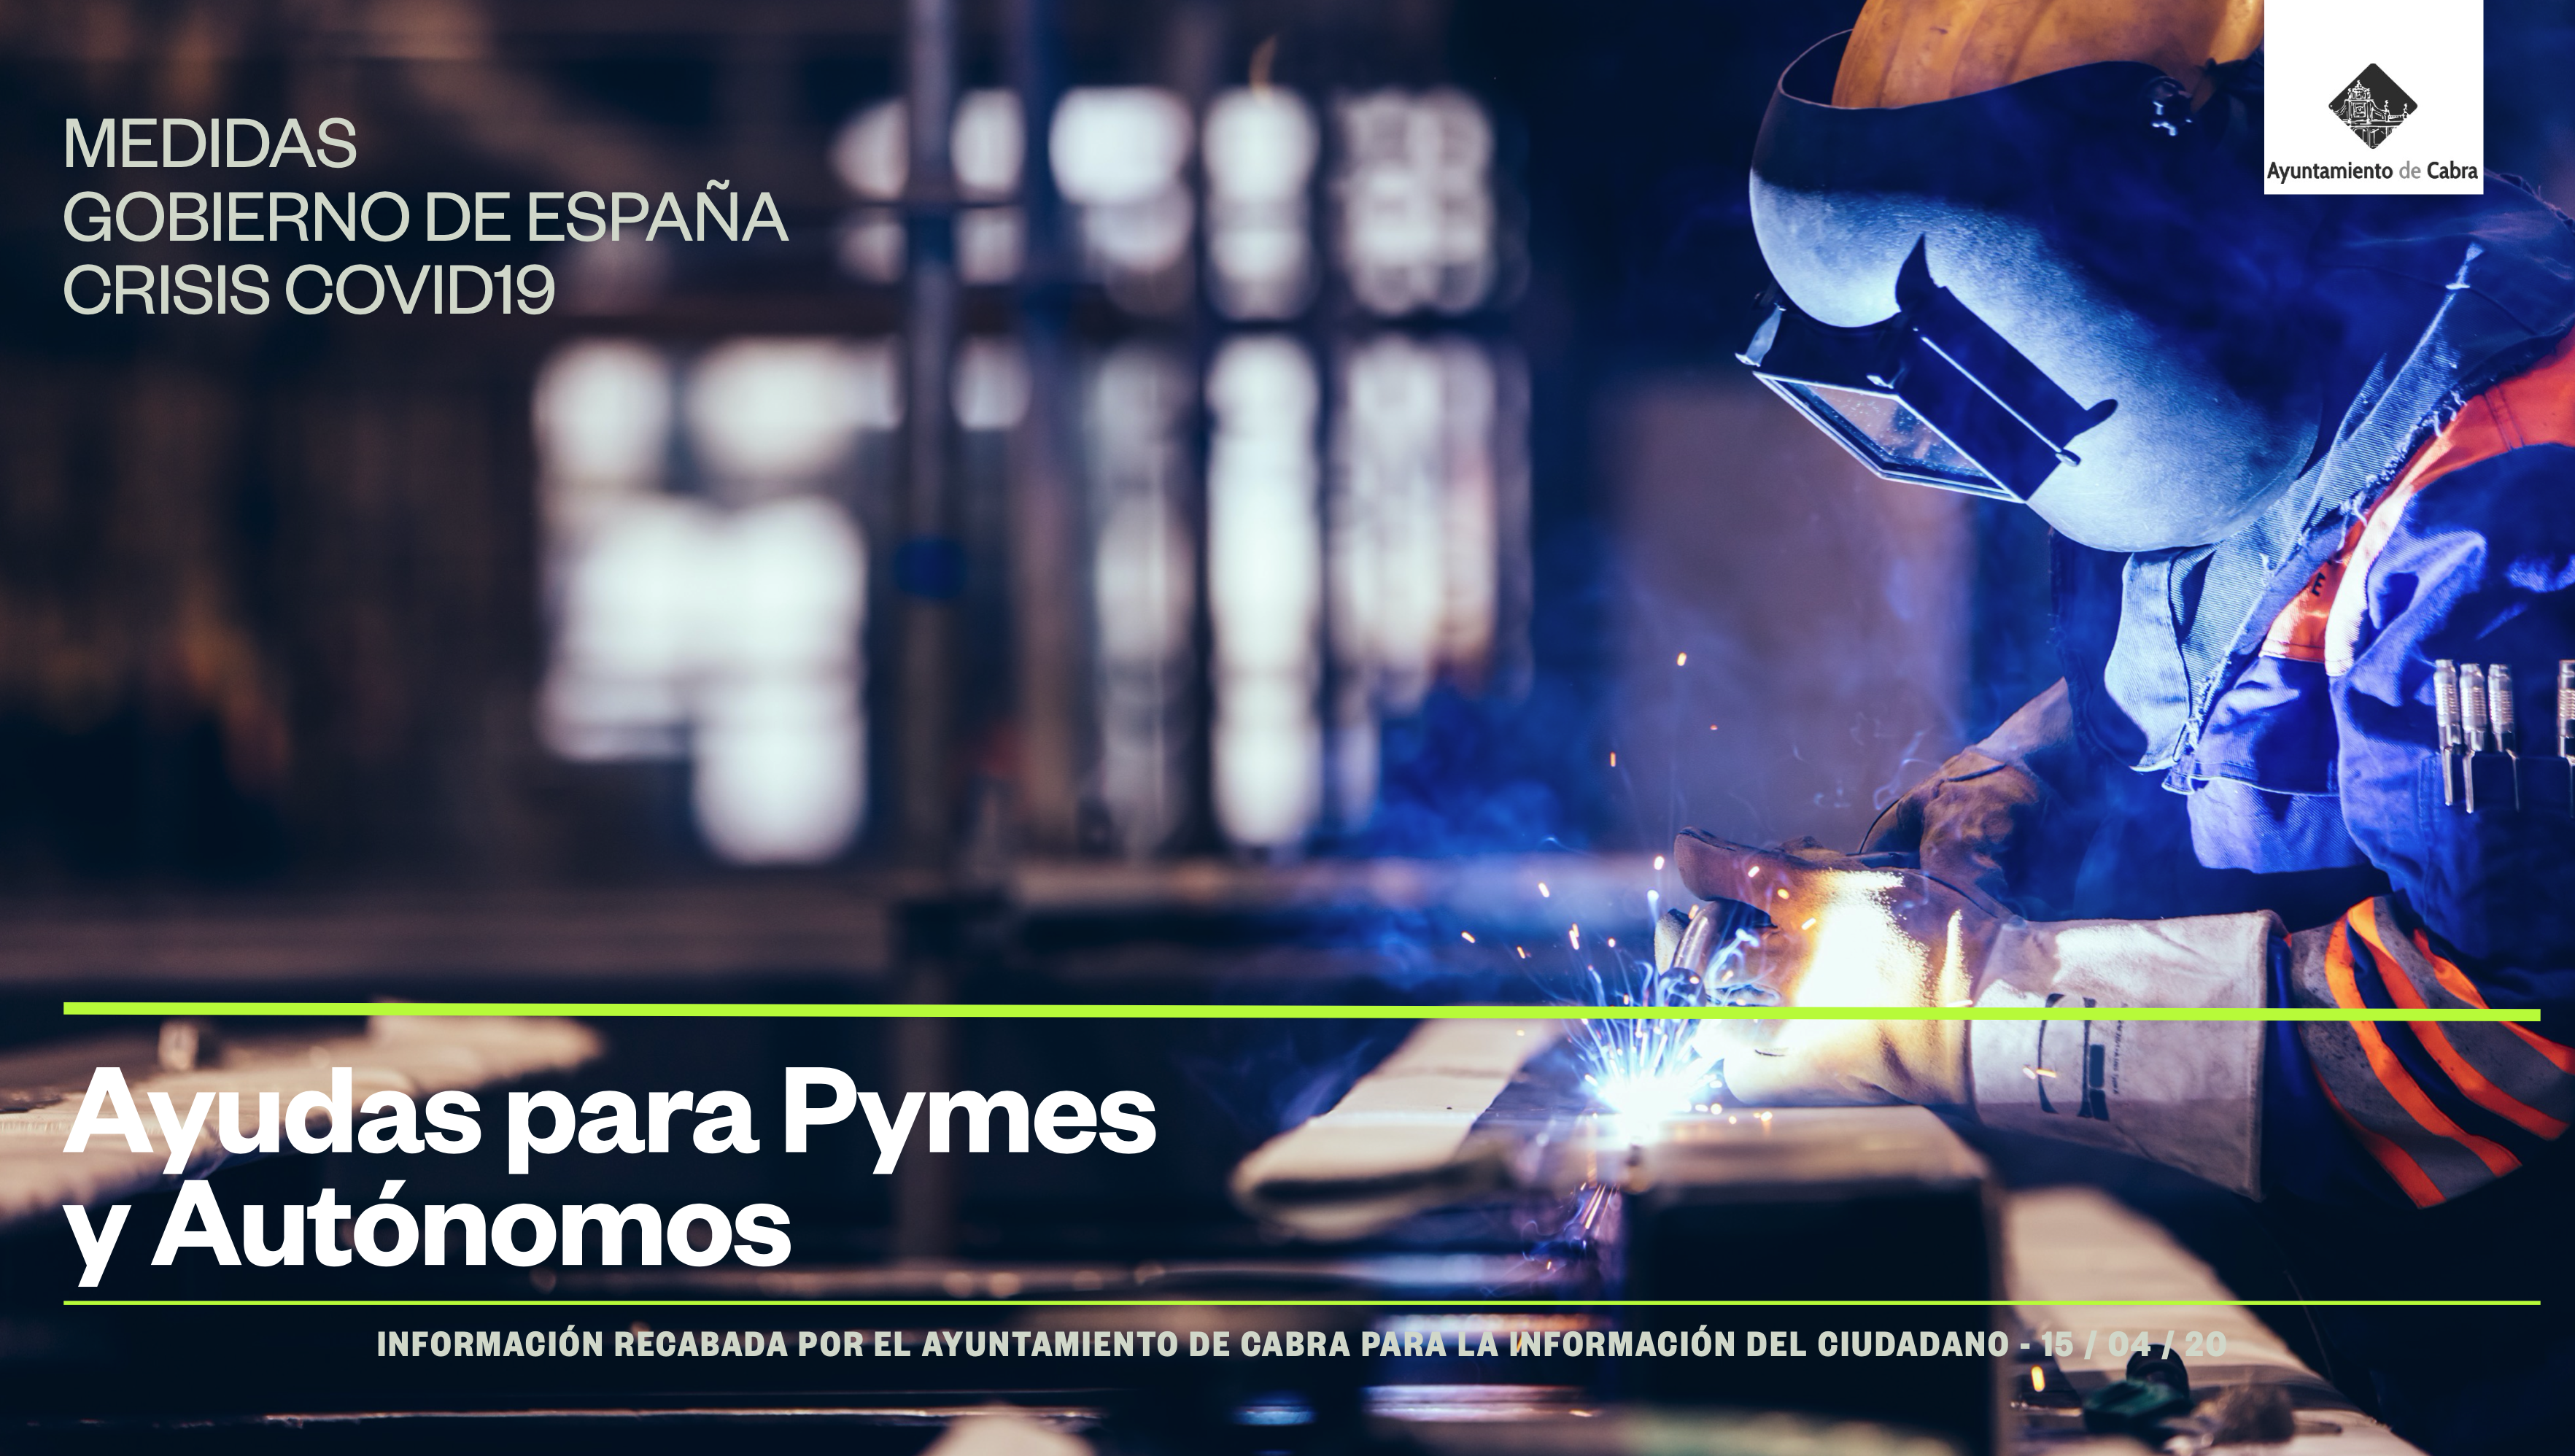 Resumen de Medidas para PYMES y Autónomos publicado por el Gobierno de España